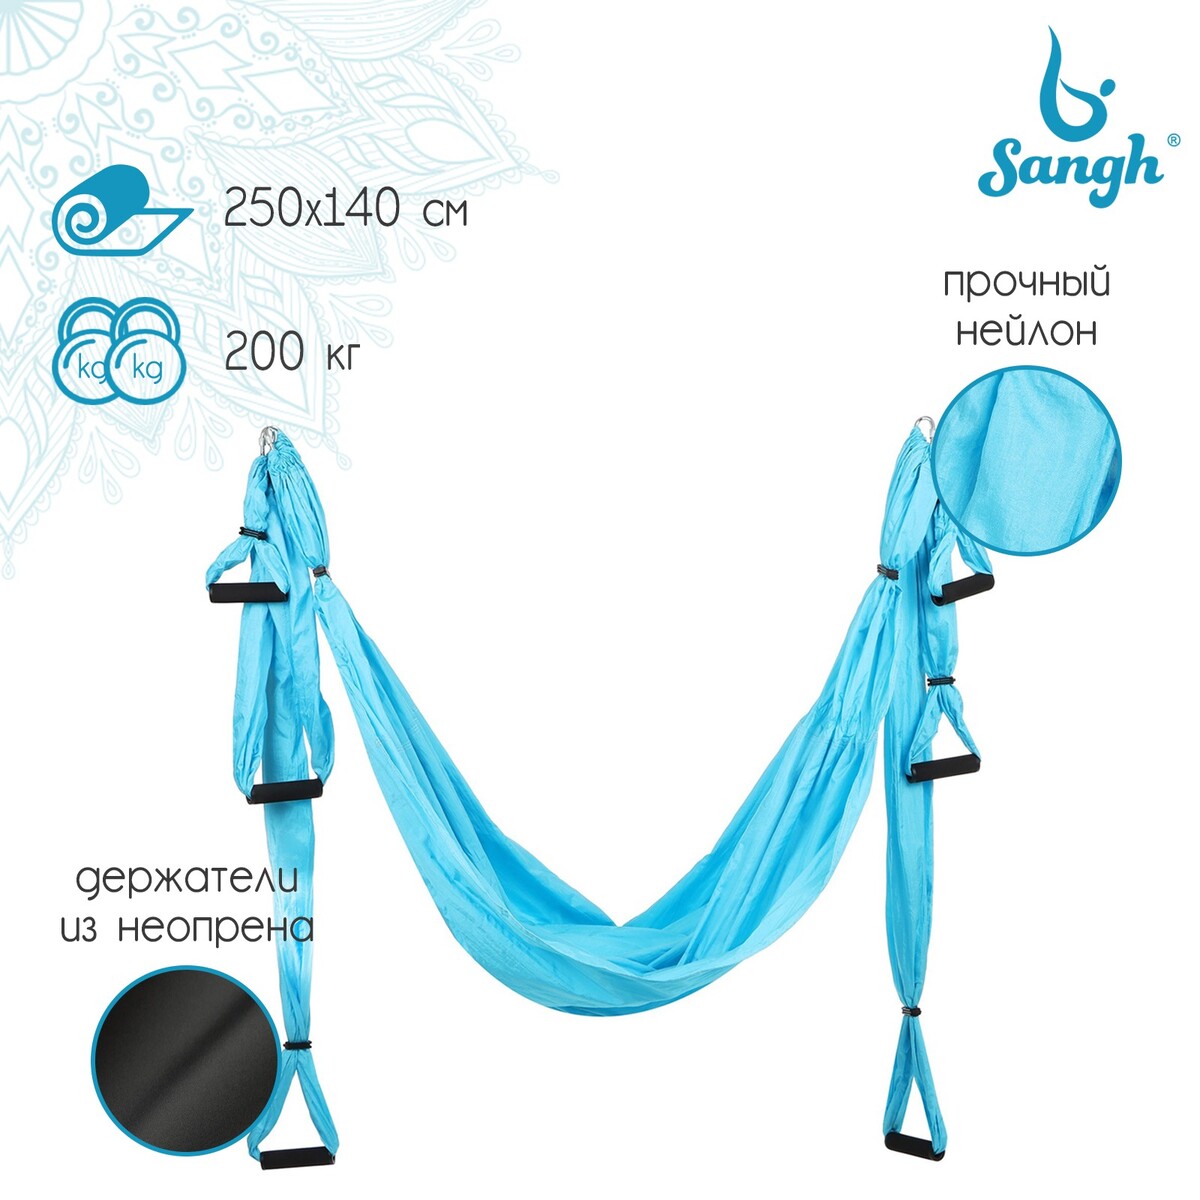 Гамак для йоги sangh, 250×140 см, цвет голубой гамак для йоги sangh 250×140 см голубой